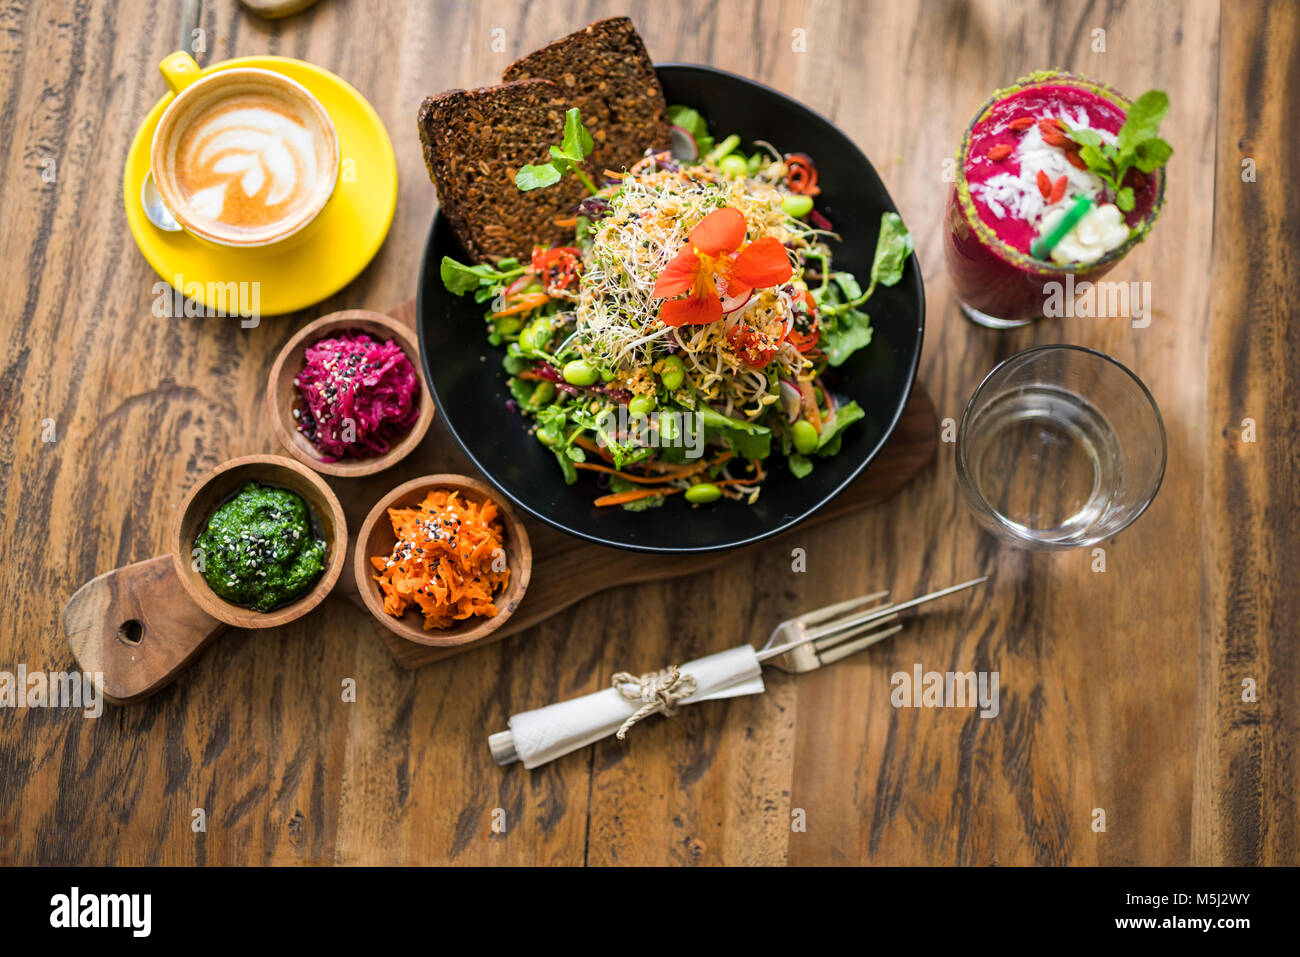 Verziert bunten Salat auf Holzplatte mit Kaffee, Wasser und Smoothie auf der Seite Stockfoto